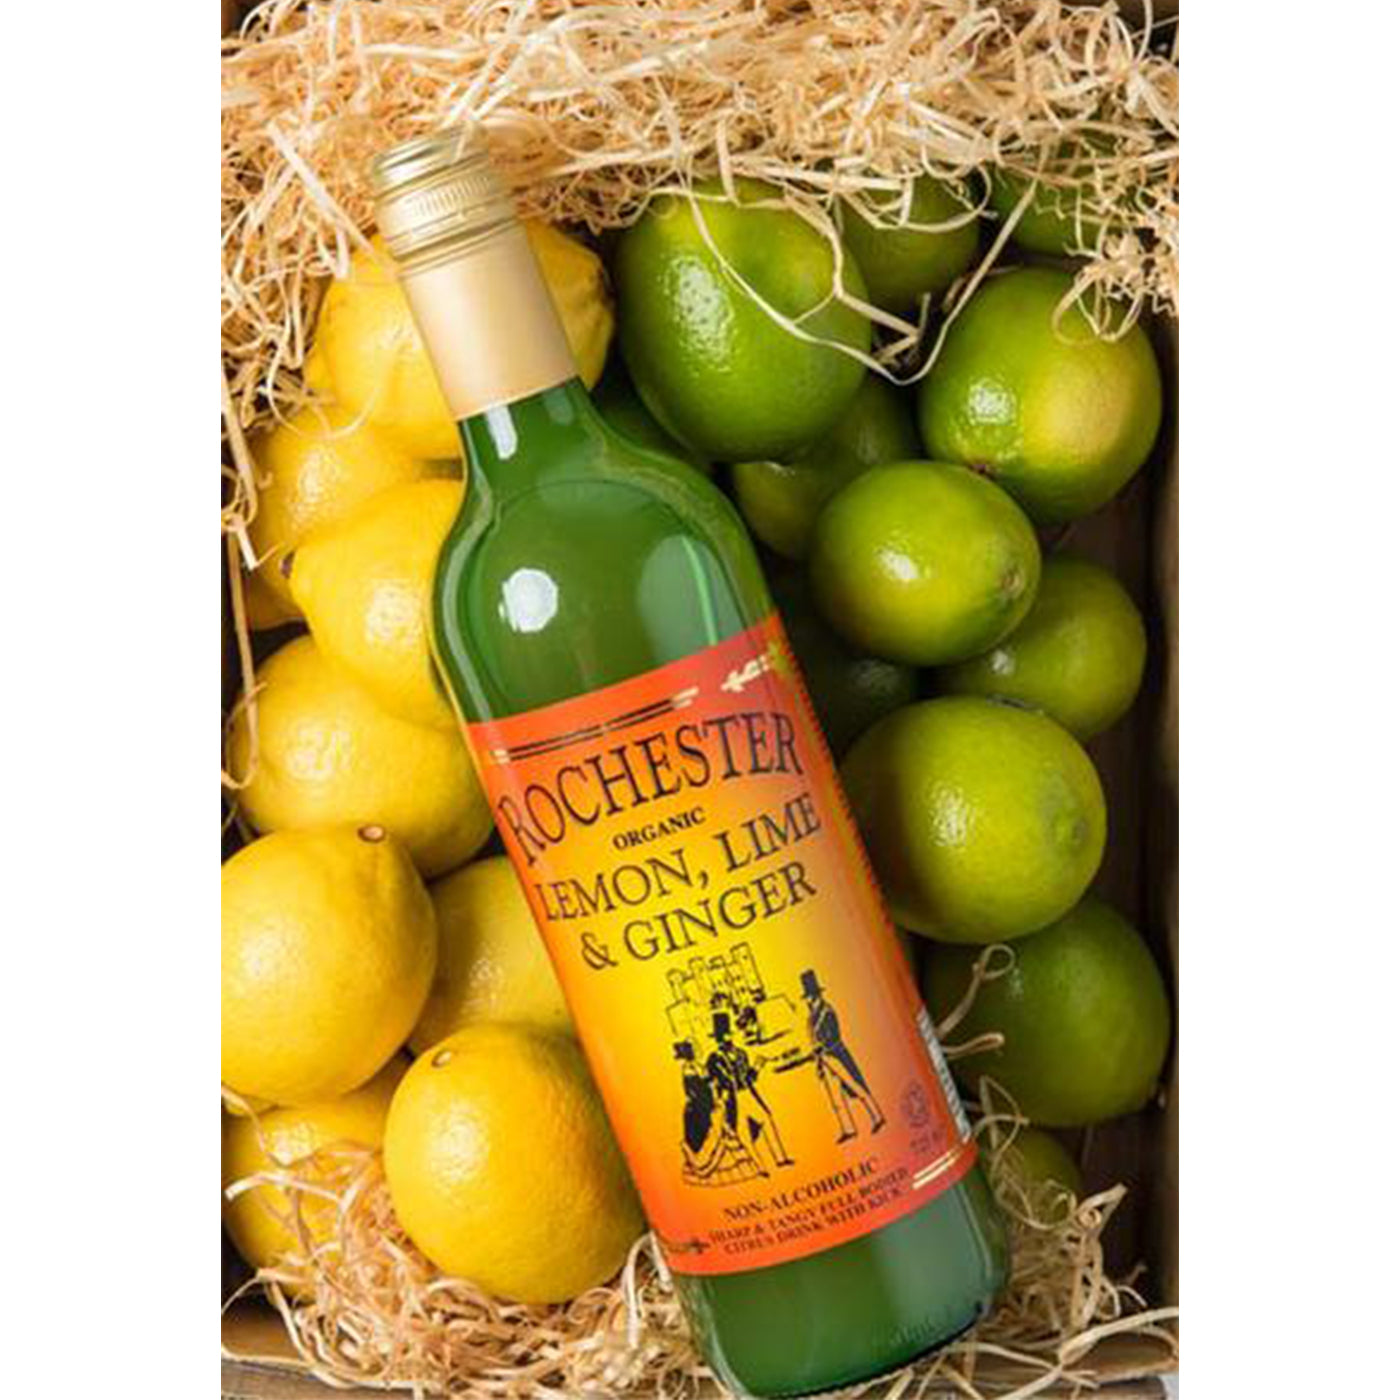 Rochester Organic Lemon, Lime & Ginger